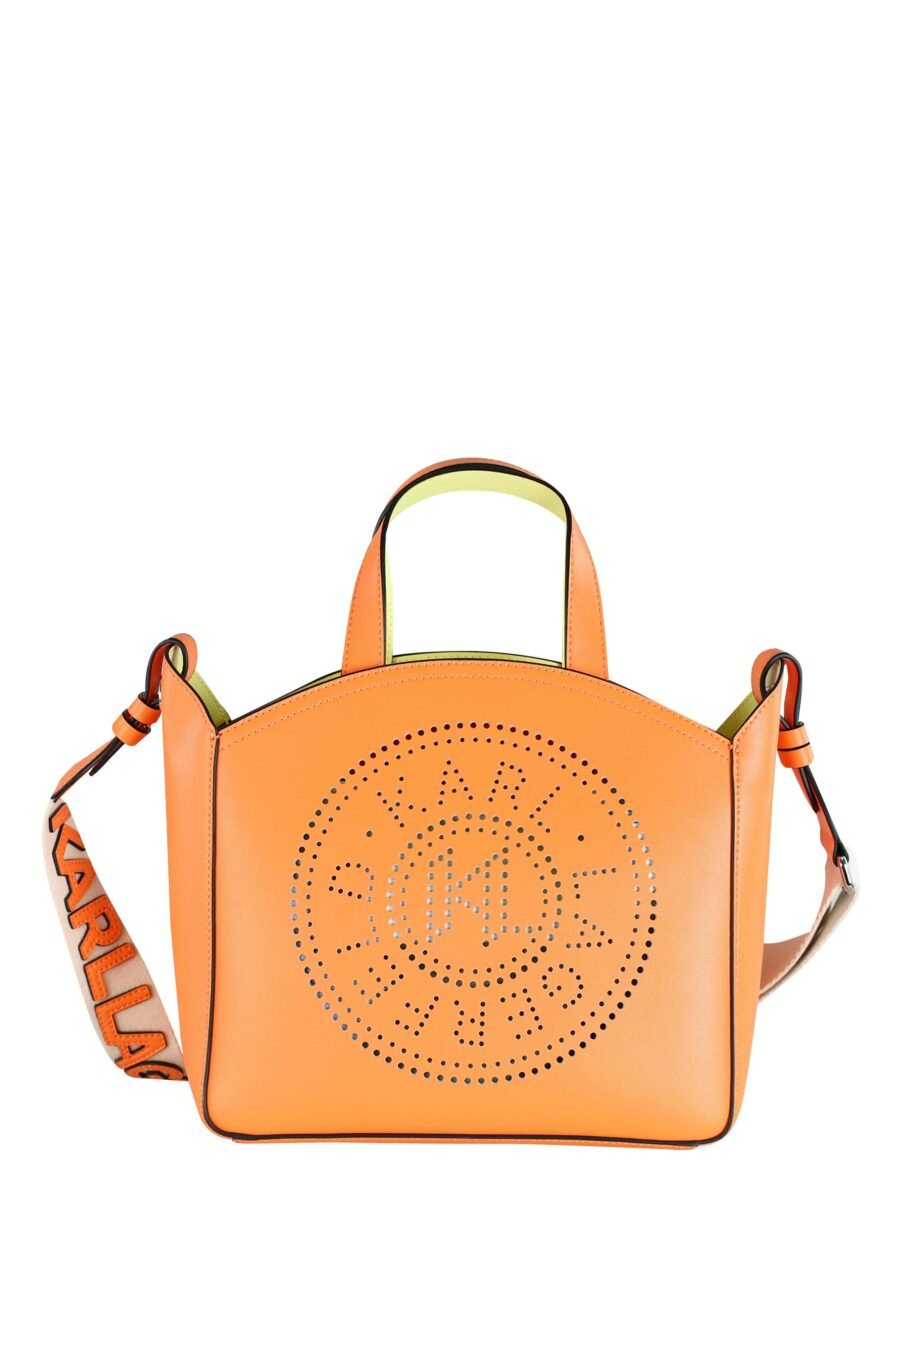 Tote bag naranja con logo "k/circle" monocromático - 8720744234692